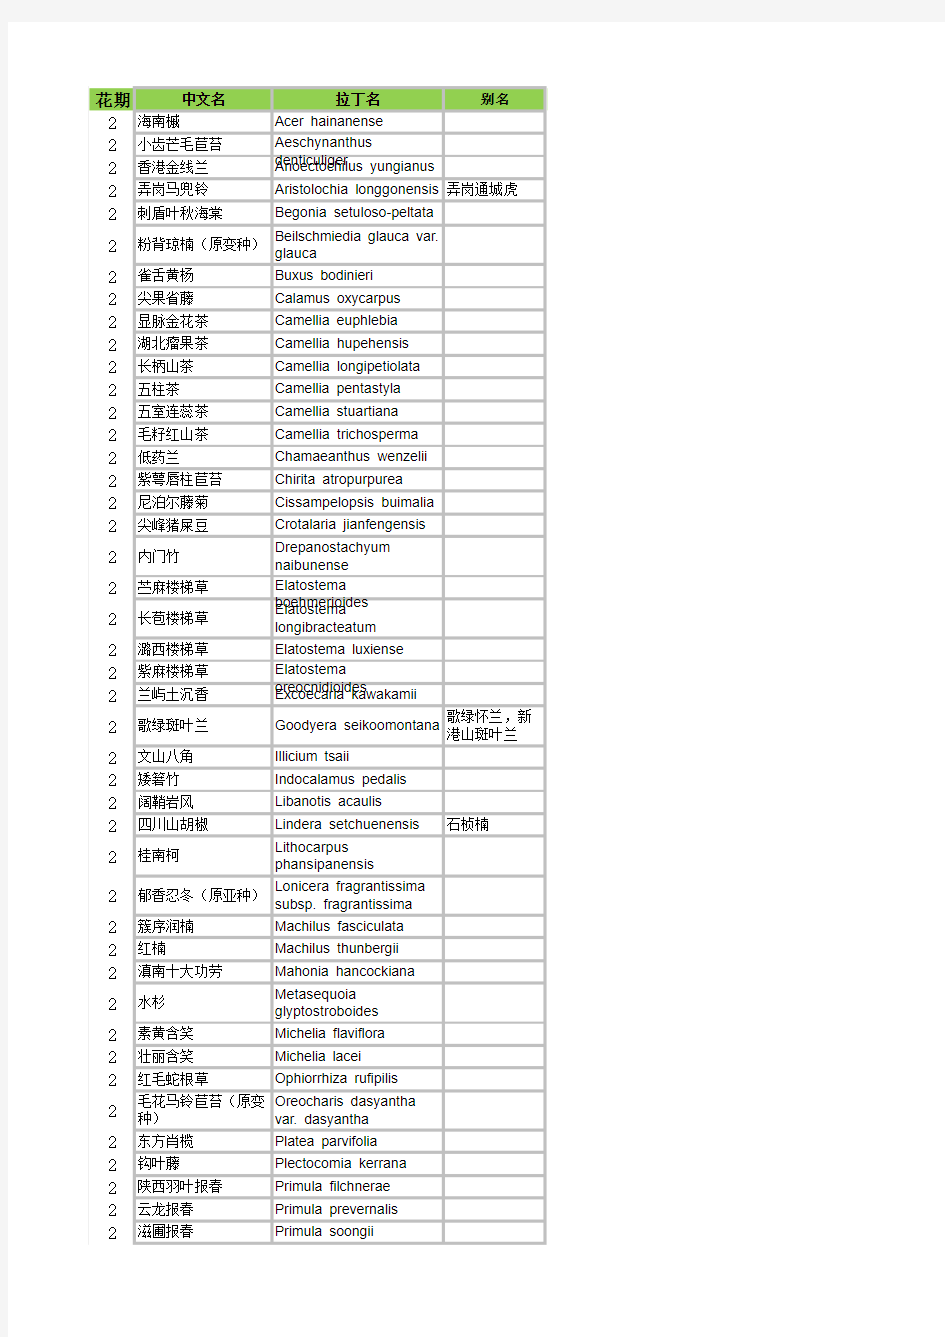 2月开花植物列表--(根据中国科学院植物研究所发布数据编辑)